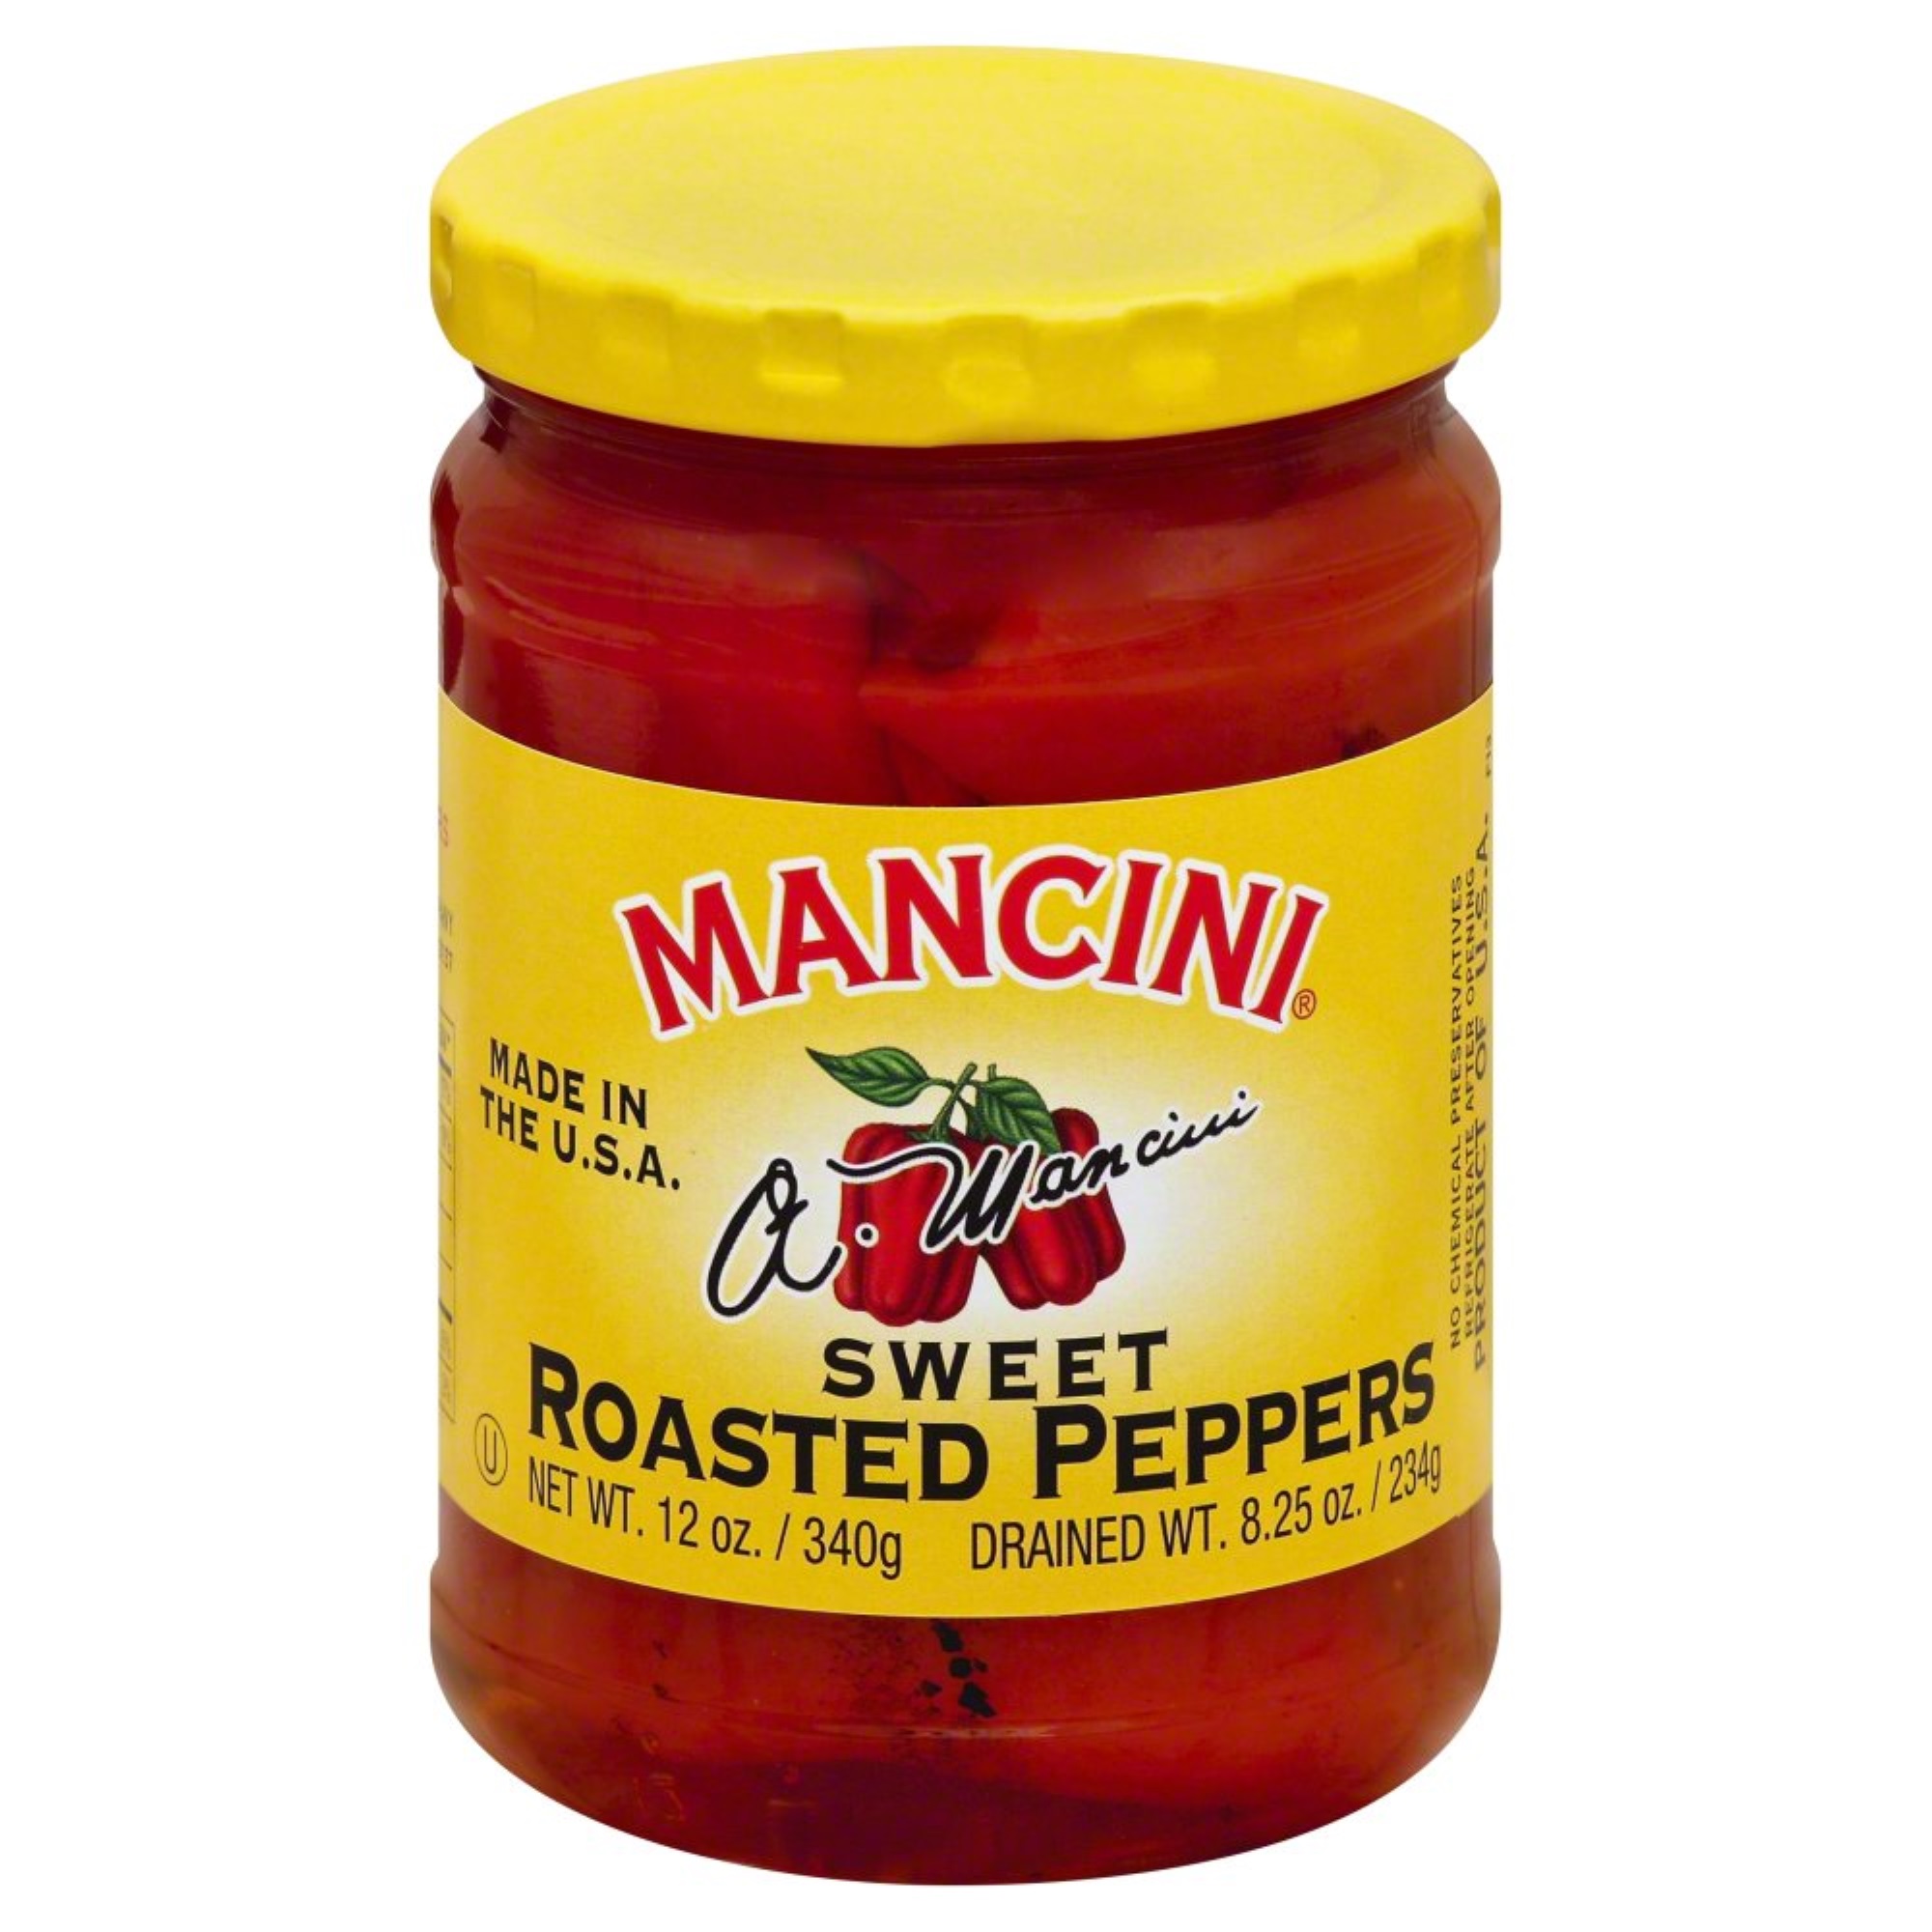 Mancini Sweet Roasted Pepper, 12 oz - image 1 of 6